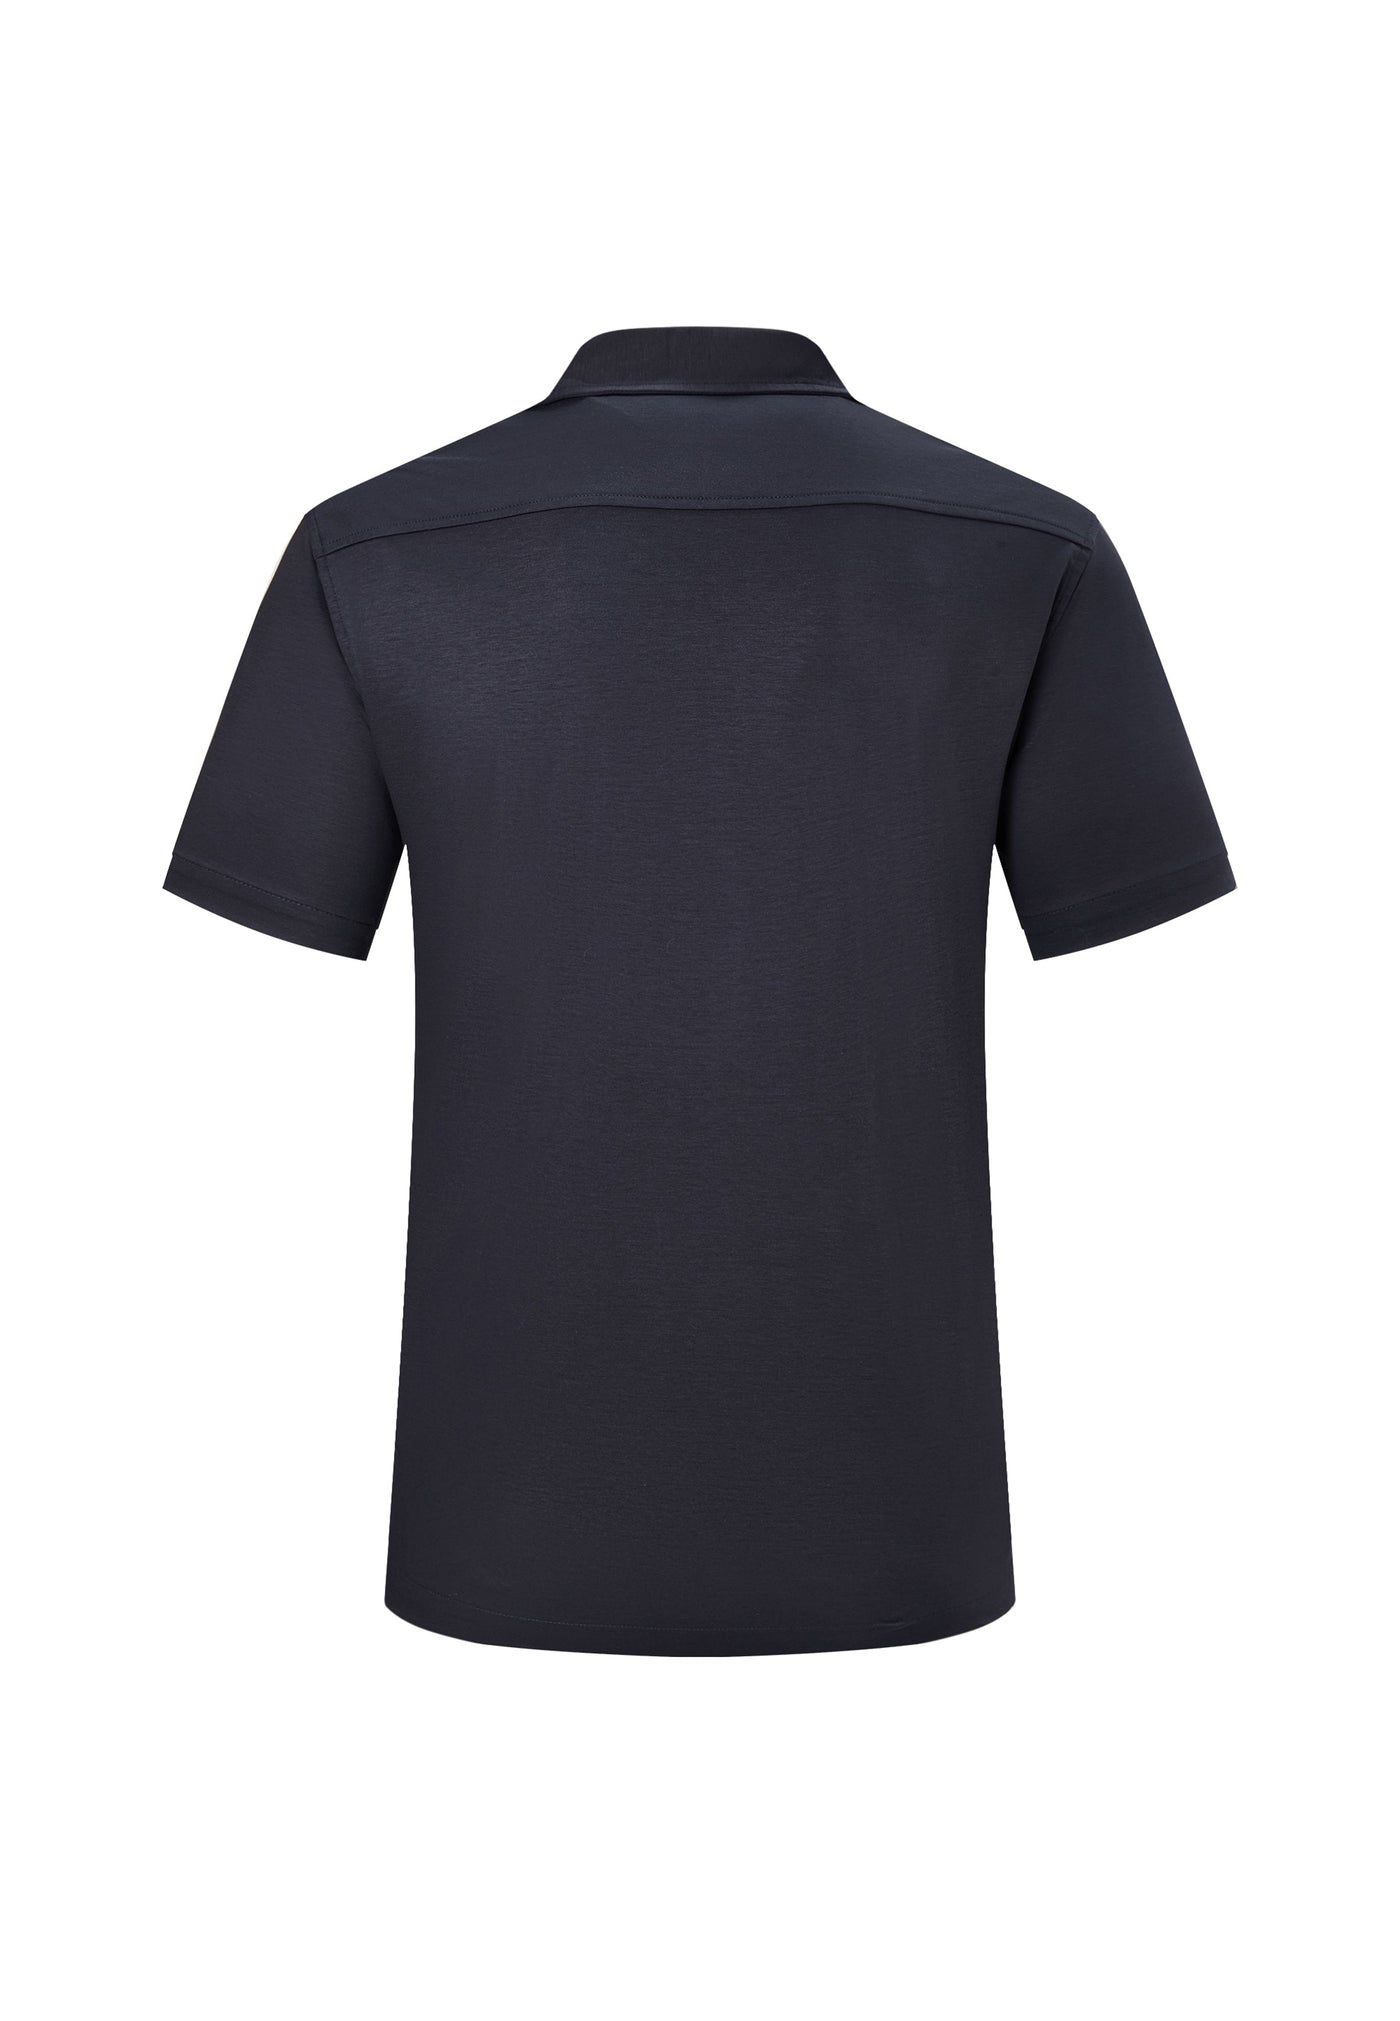 Men Clothing "Blaack" Placement Print Cotton Silk Blend Jersey Shirt Regular Fit